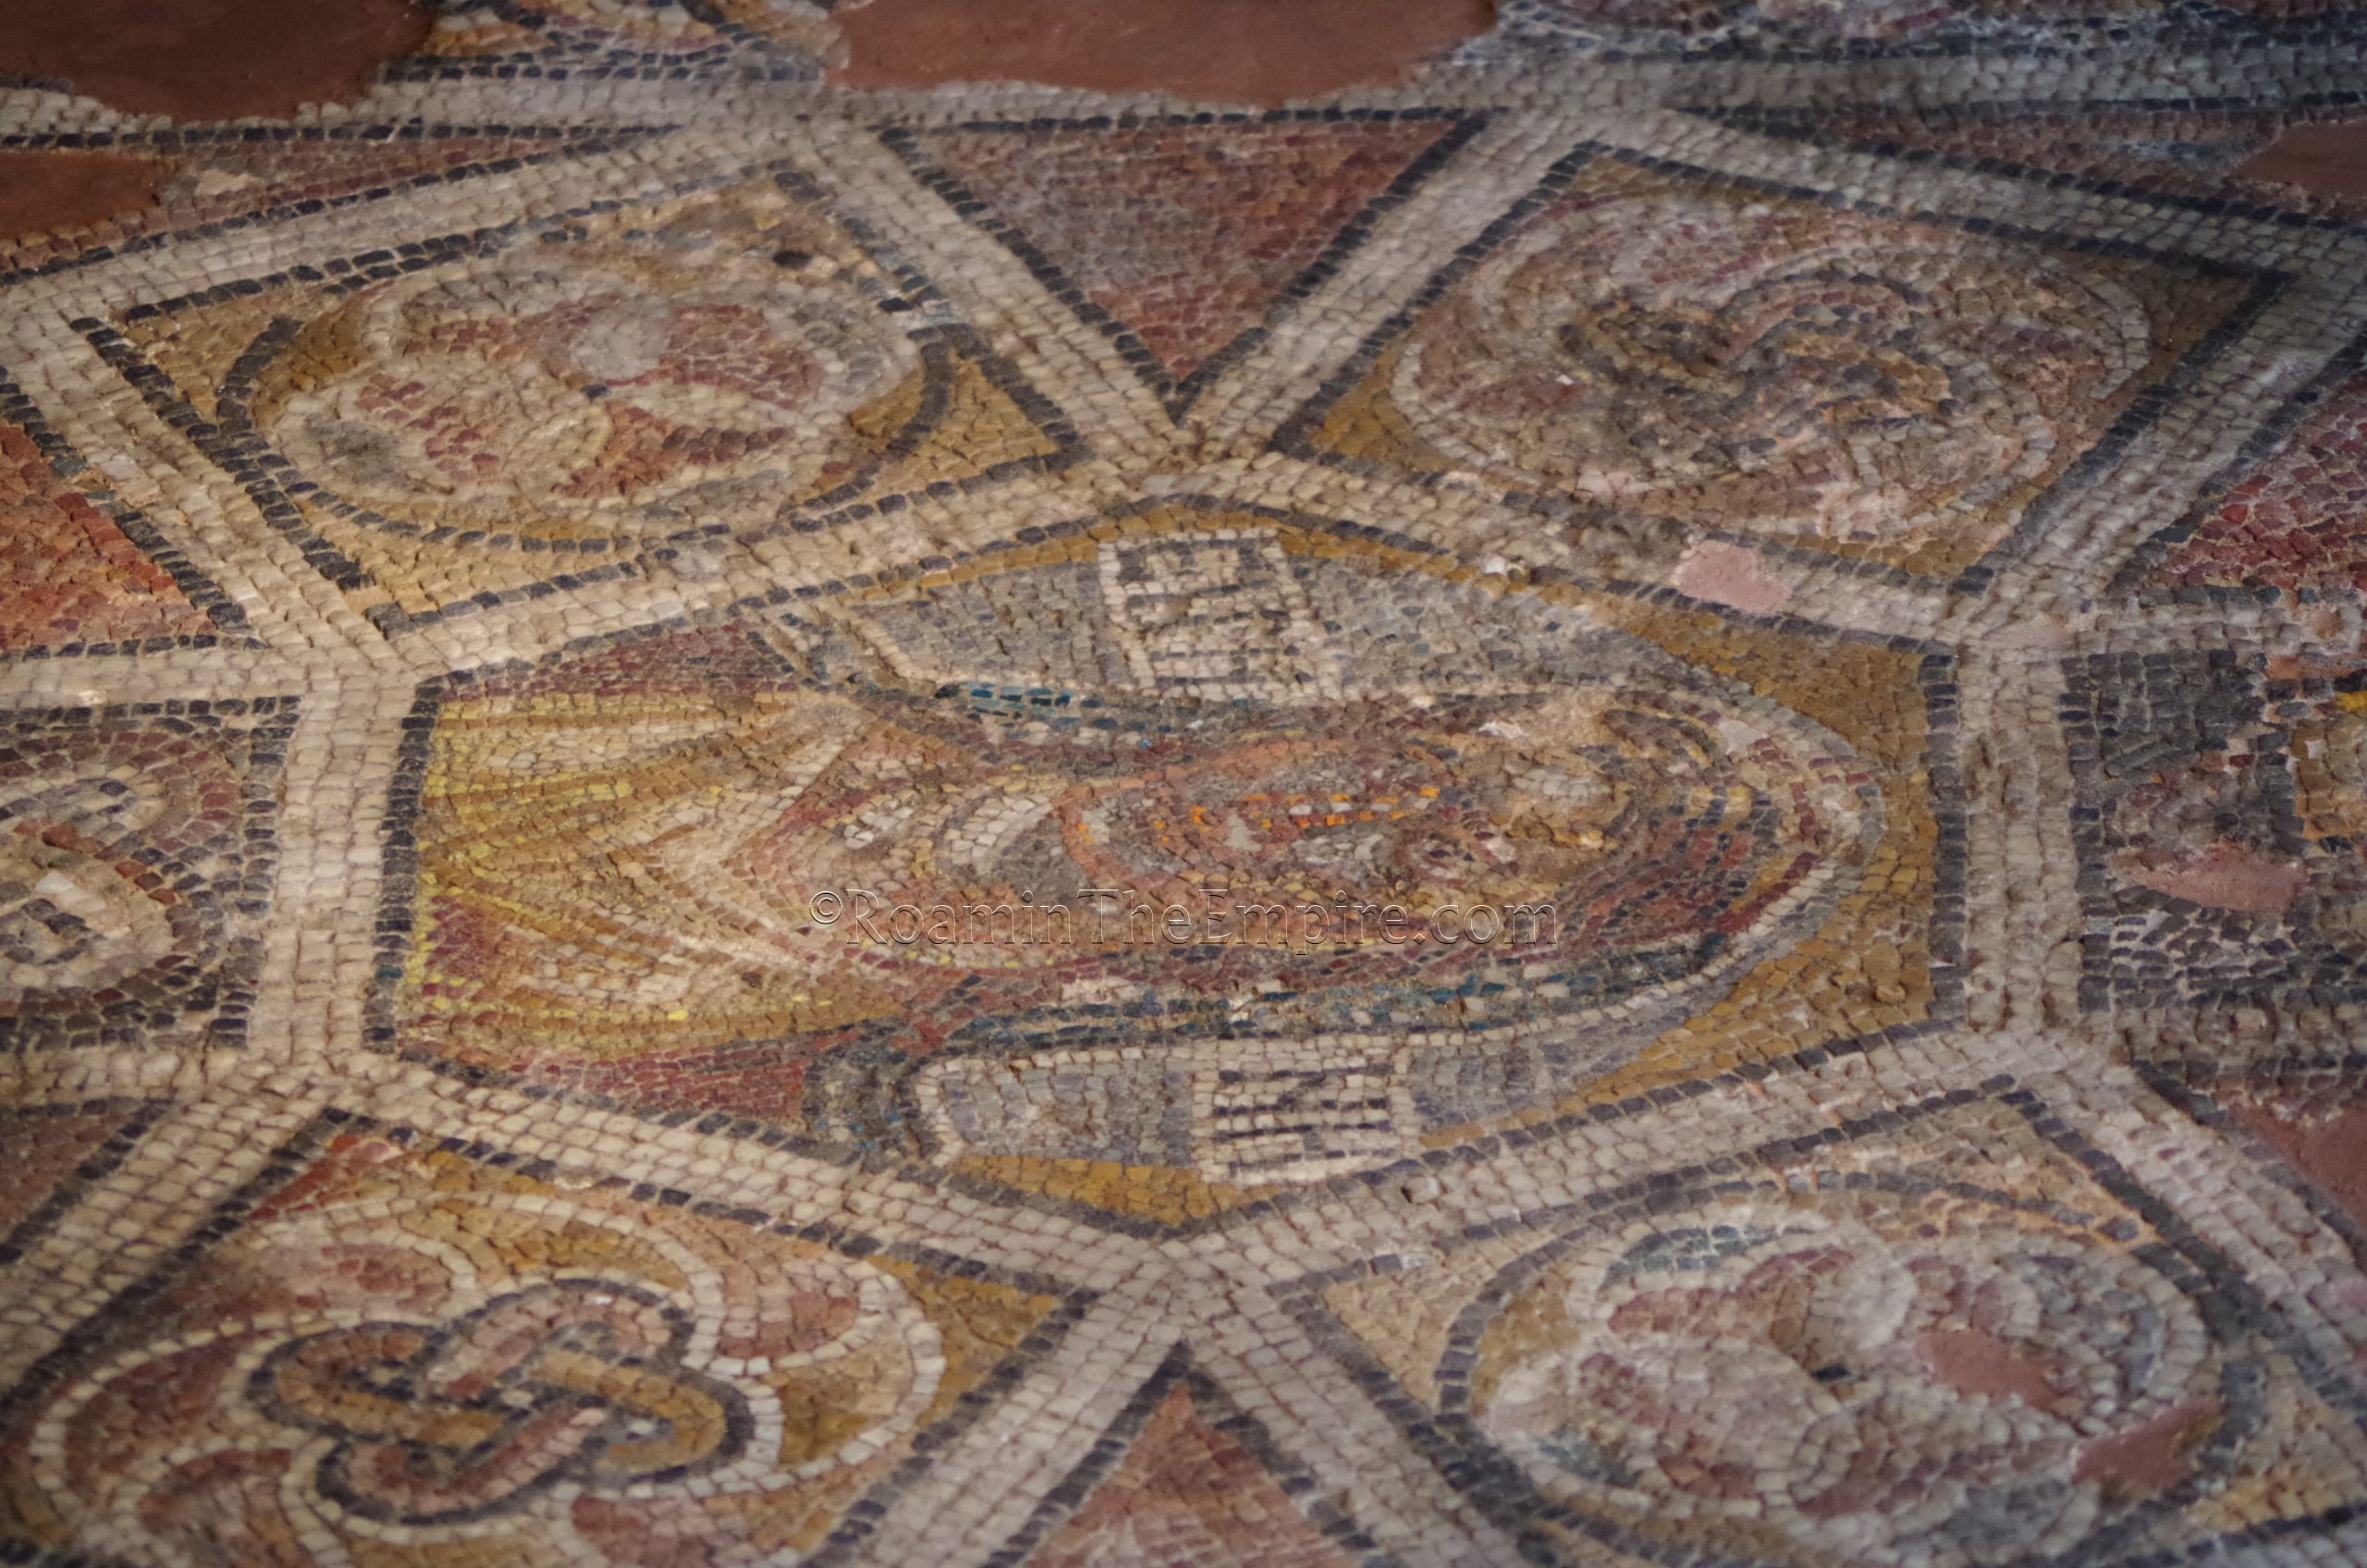 Erine mosaic in the Domus Erine. Philippopolis.